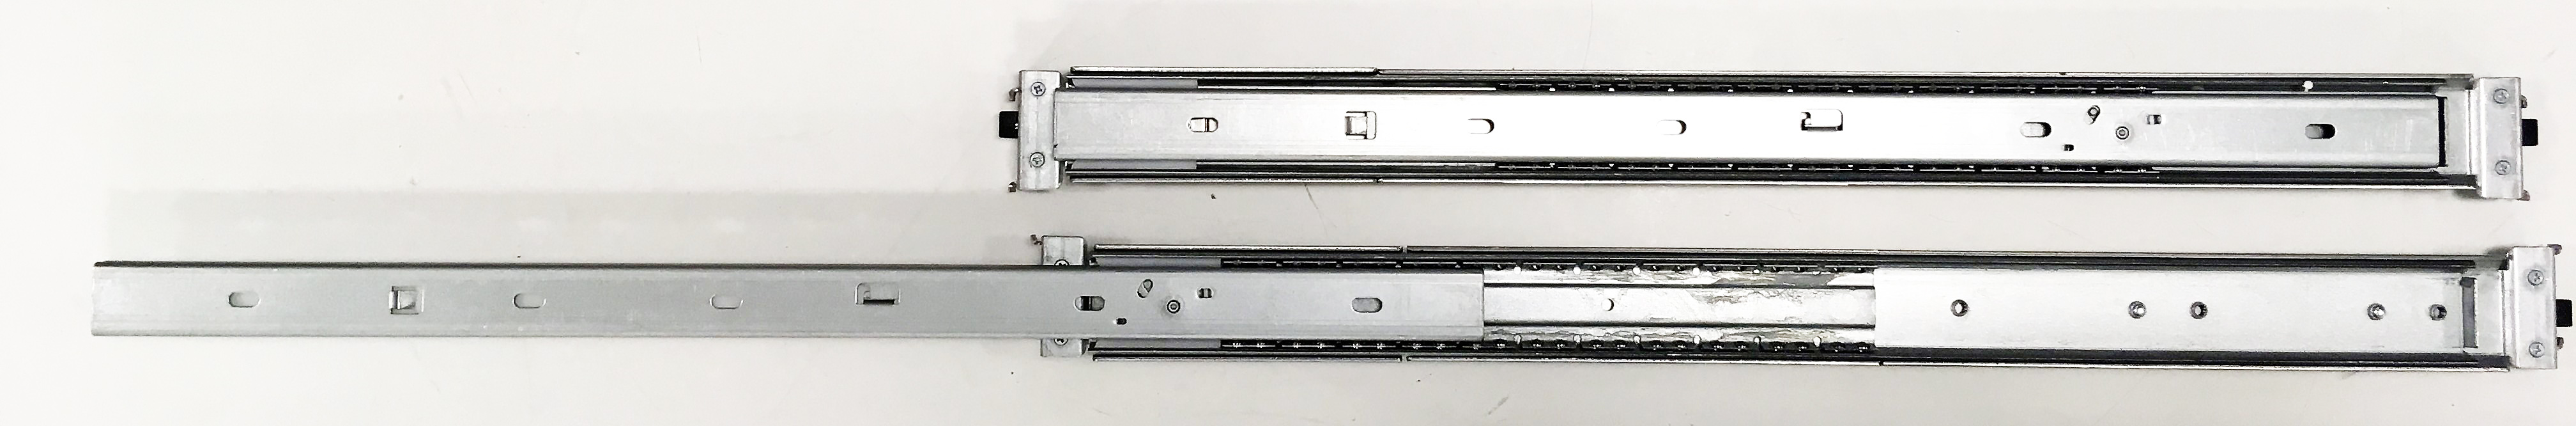 Rail Kit 3